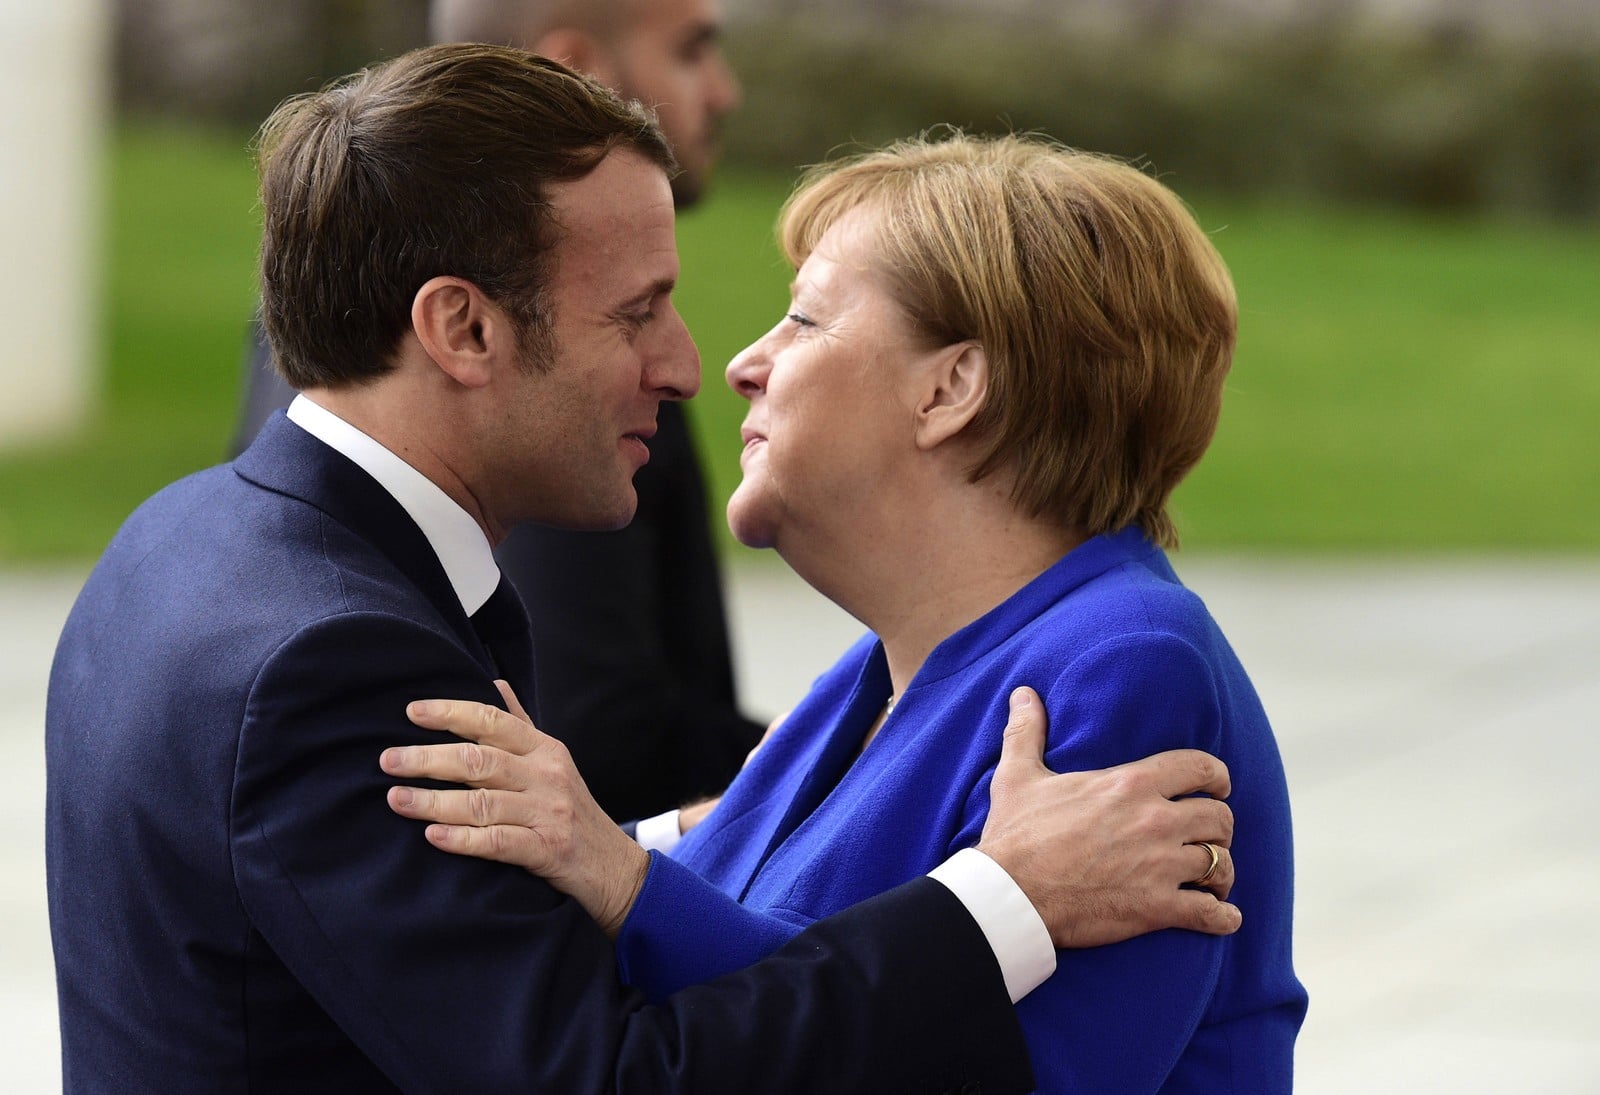 Angela Merkel et Emmanuel Macron lors d'une conférence sur la Libye à Berlin, le 19 janvier 2020,
Auteurs  : Jens Meyer/AP/SIPA,
Numéro de reportage  : AP22419714_000012.